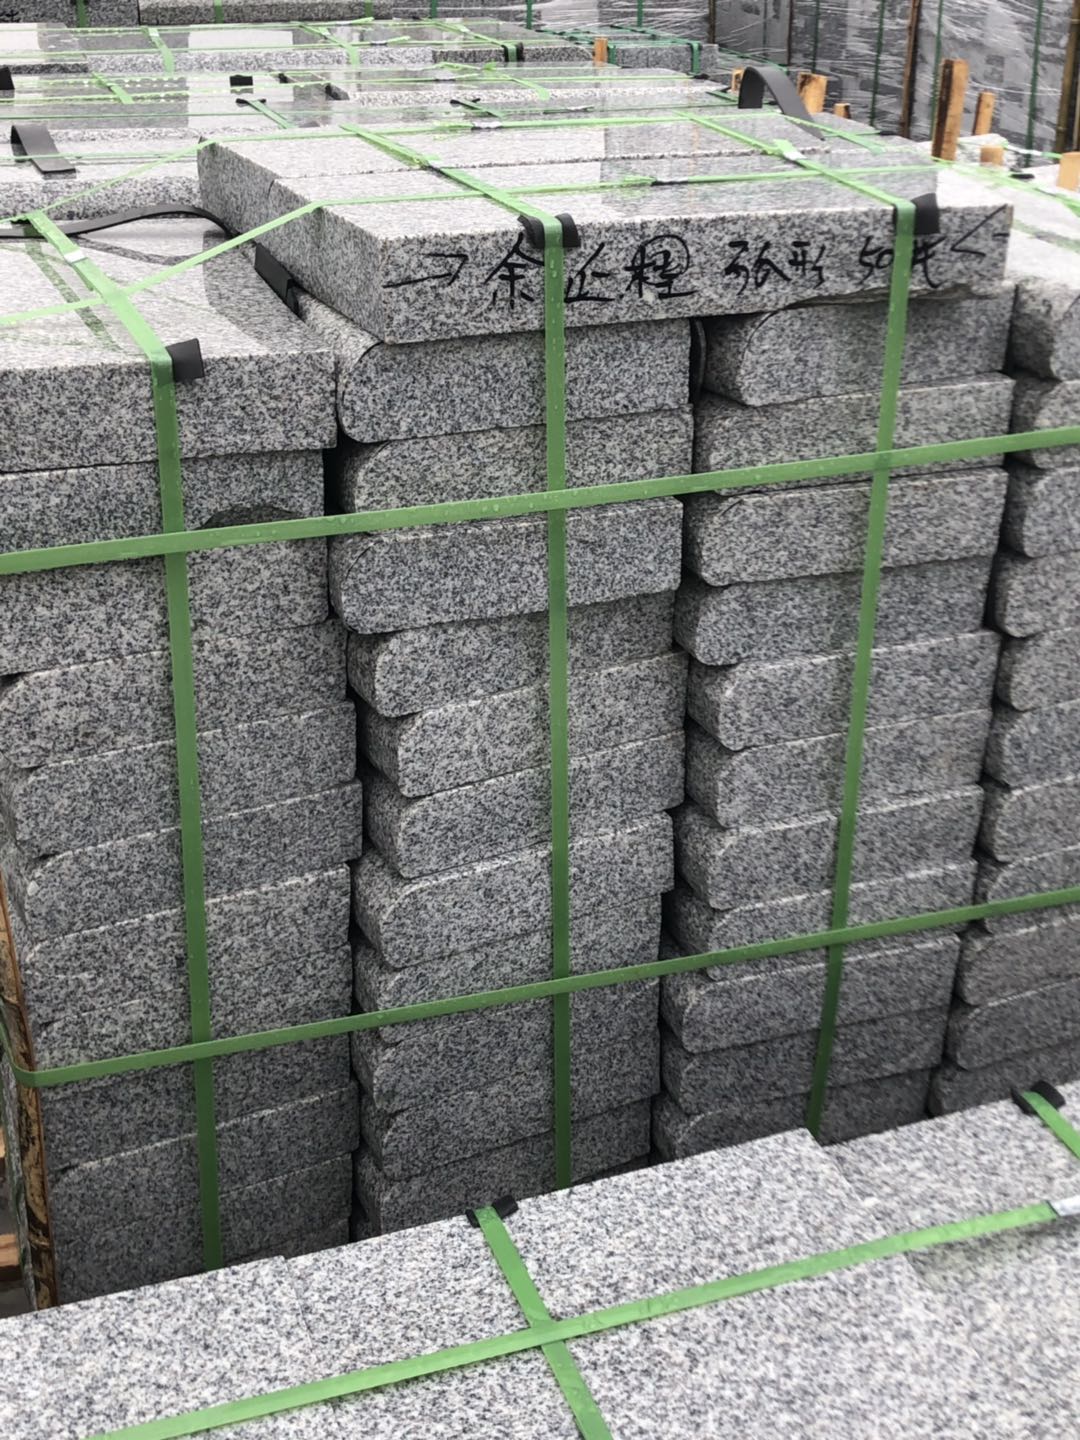 深圳大理石厂家地铺石厂家提供盲道的止步石尺寸/规格 条形盲道石价格